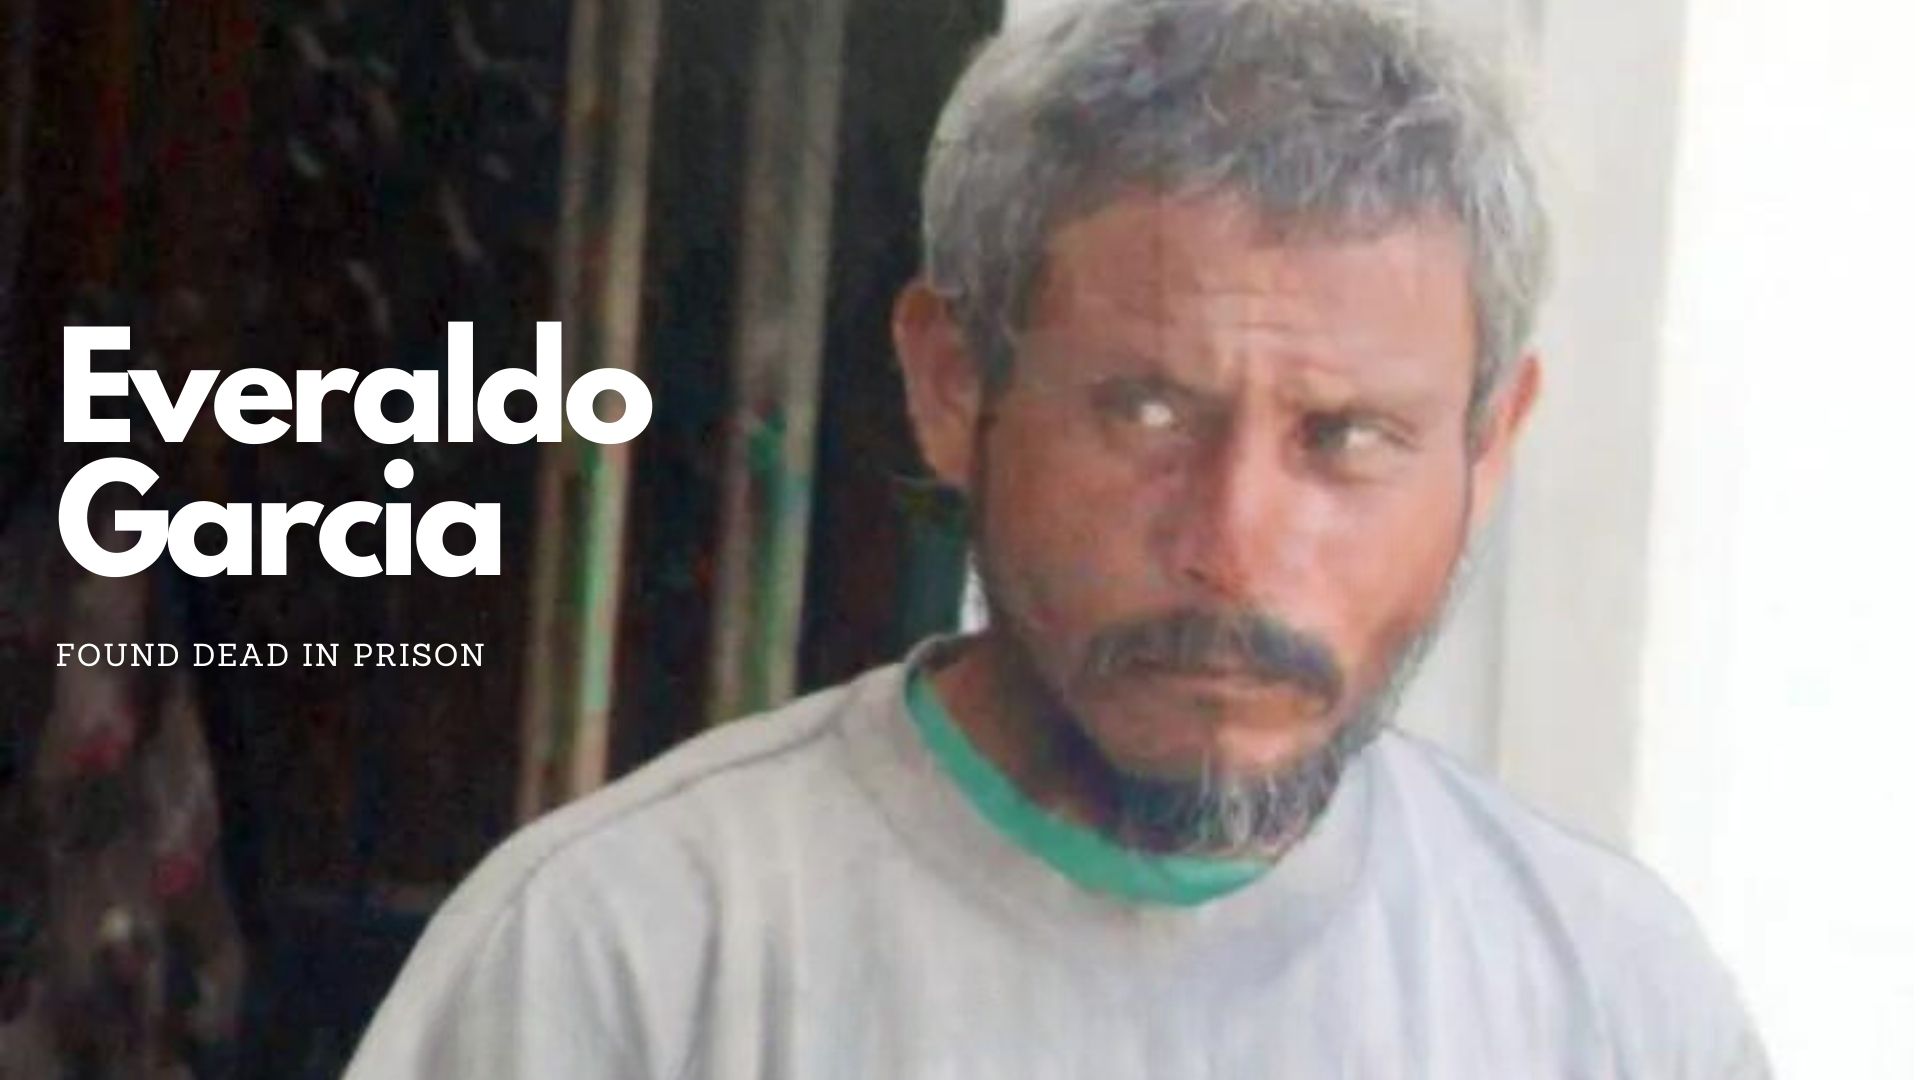 Everaldo Garcia found dead in prison